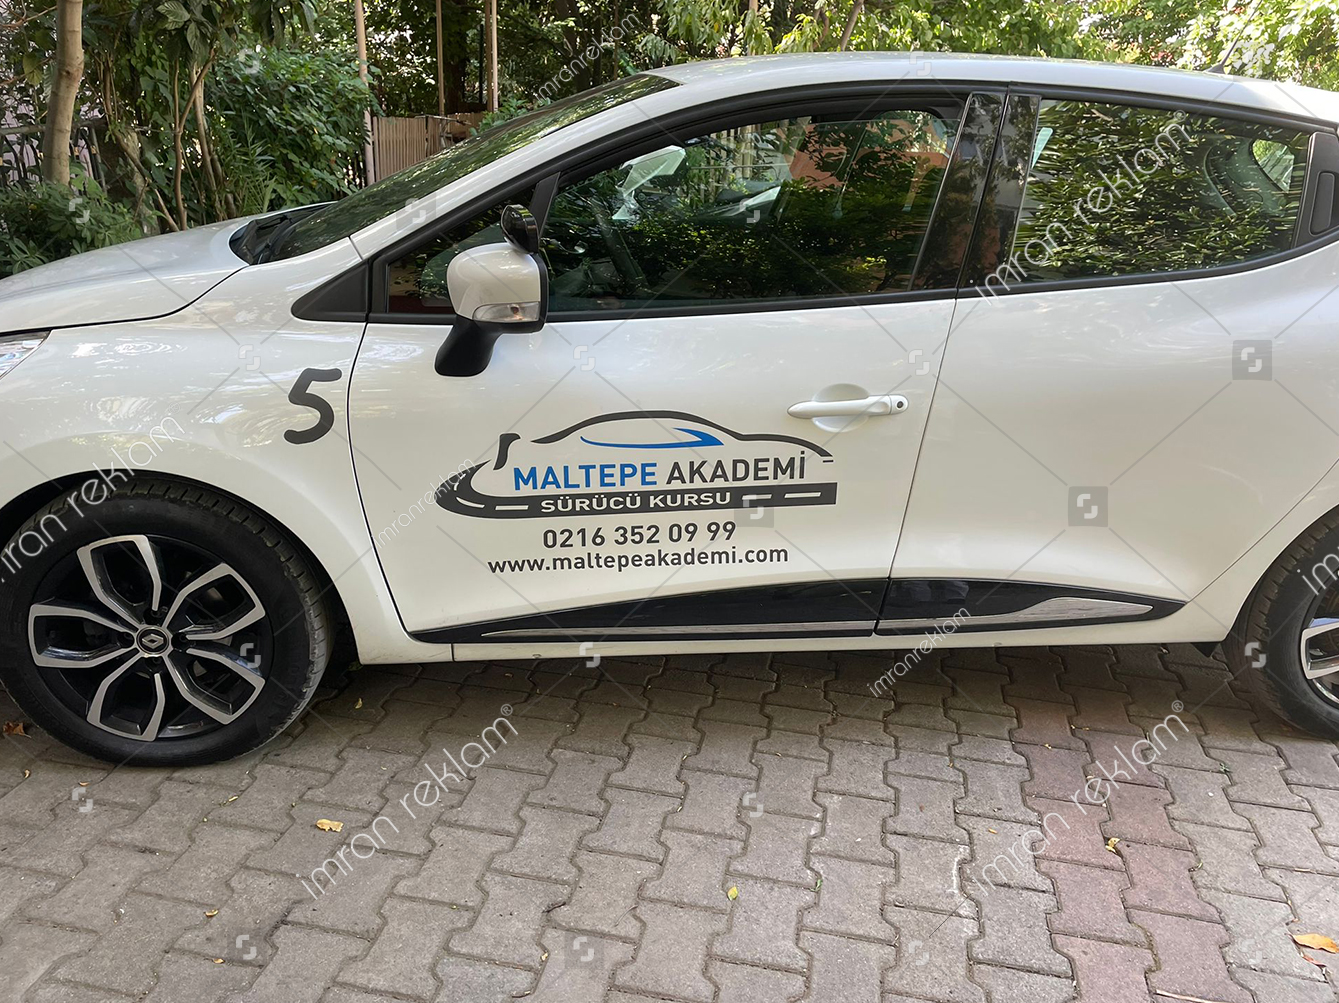 Maltepe Akademi Sürücü Kursu Aracı Logo Kaplama